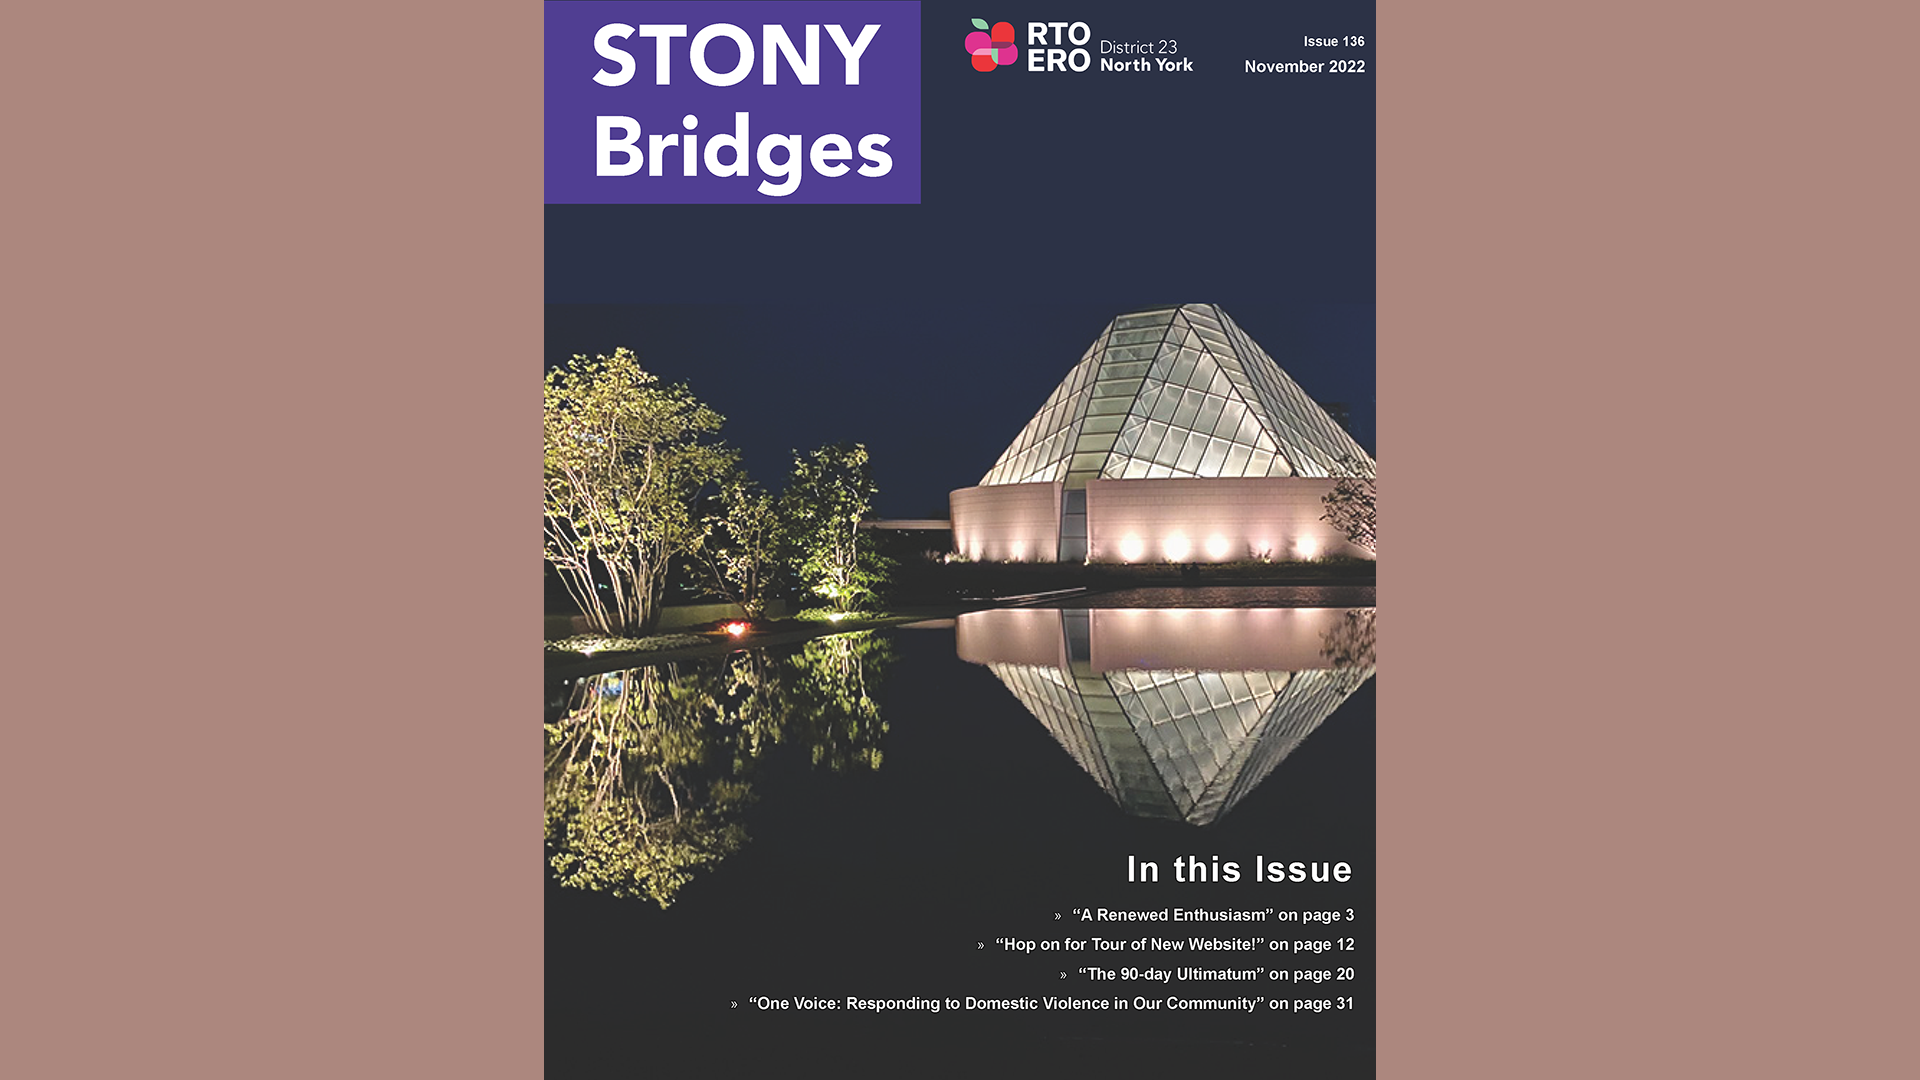 STONY Bridges 2022 Fall Edition